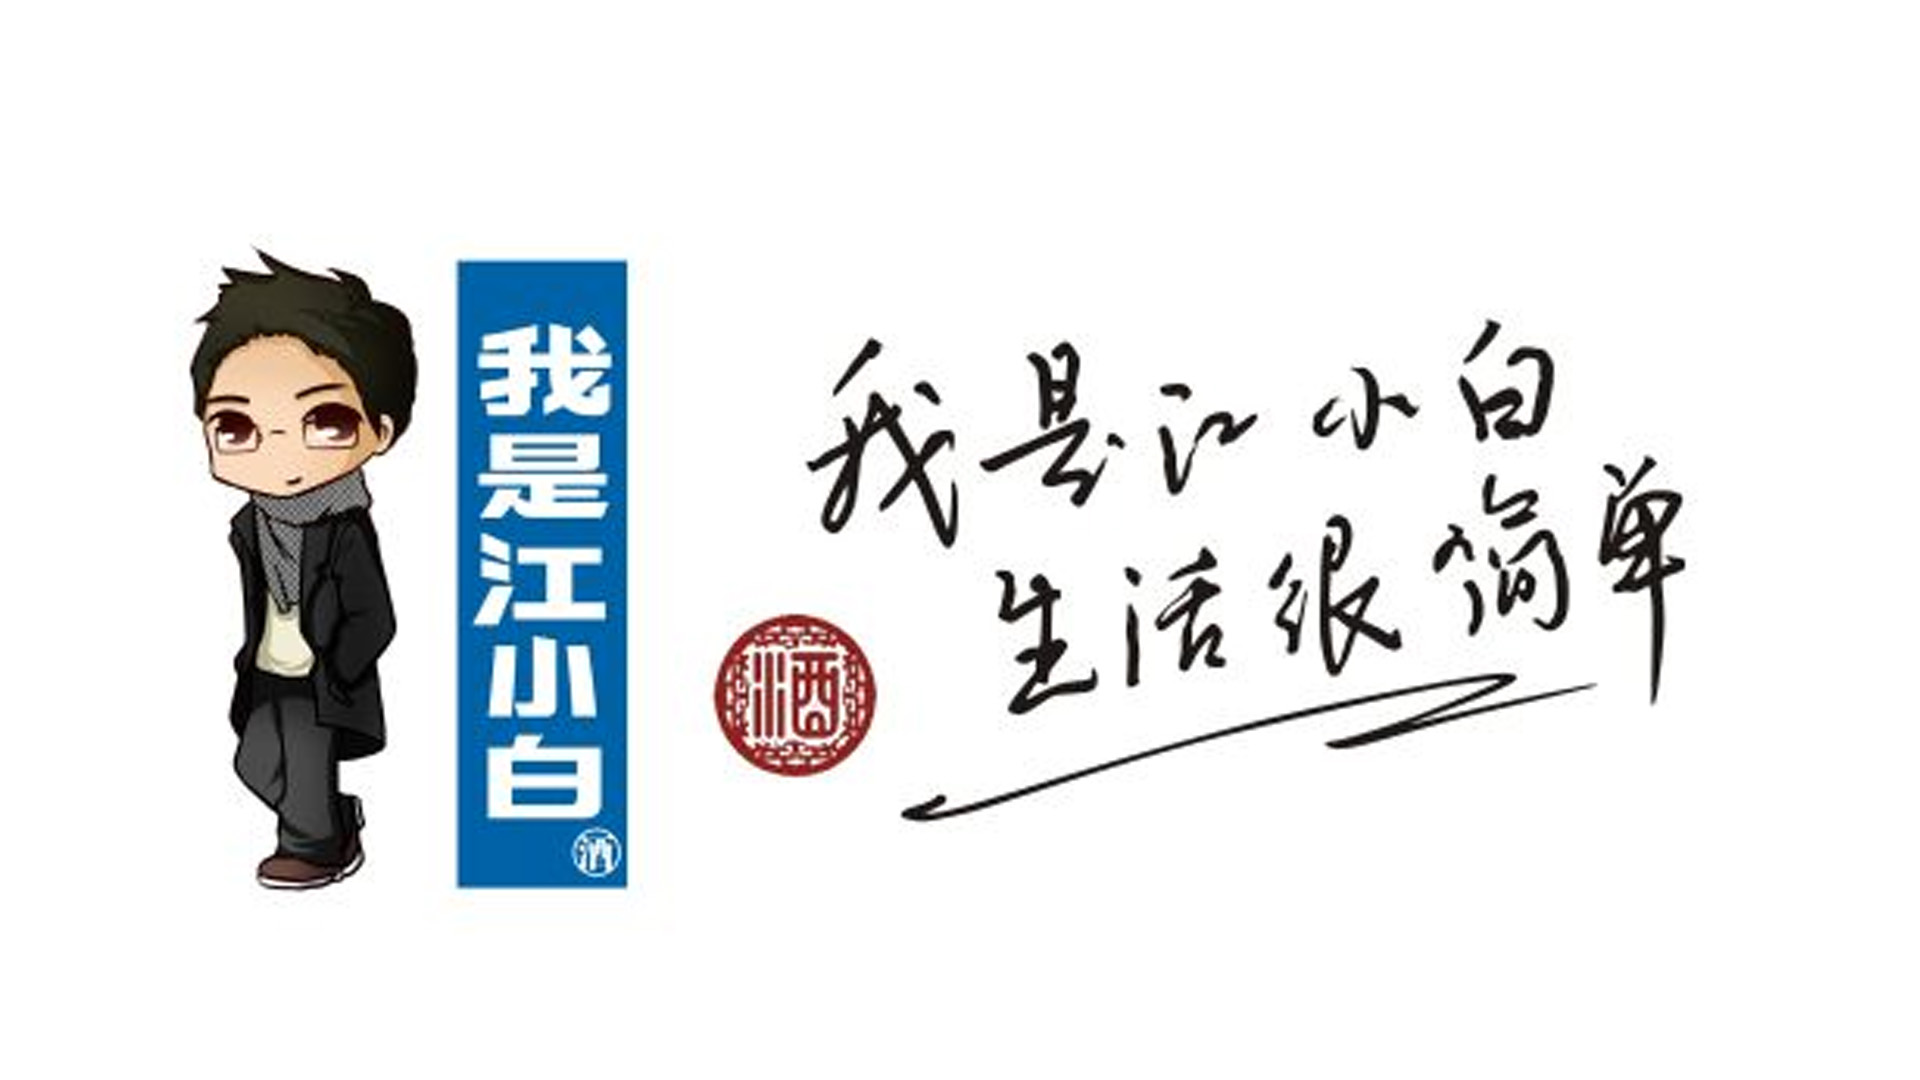 江小白品牌定位 酒水vi设计 酒水logo设计 酒水品牌定位.jpg